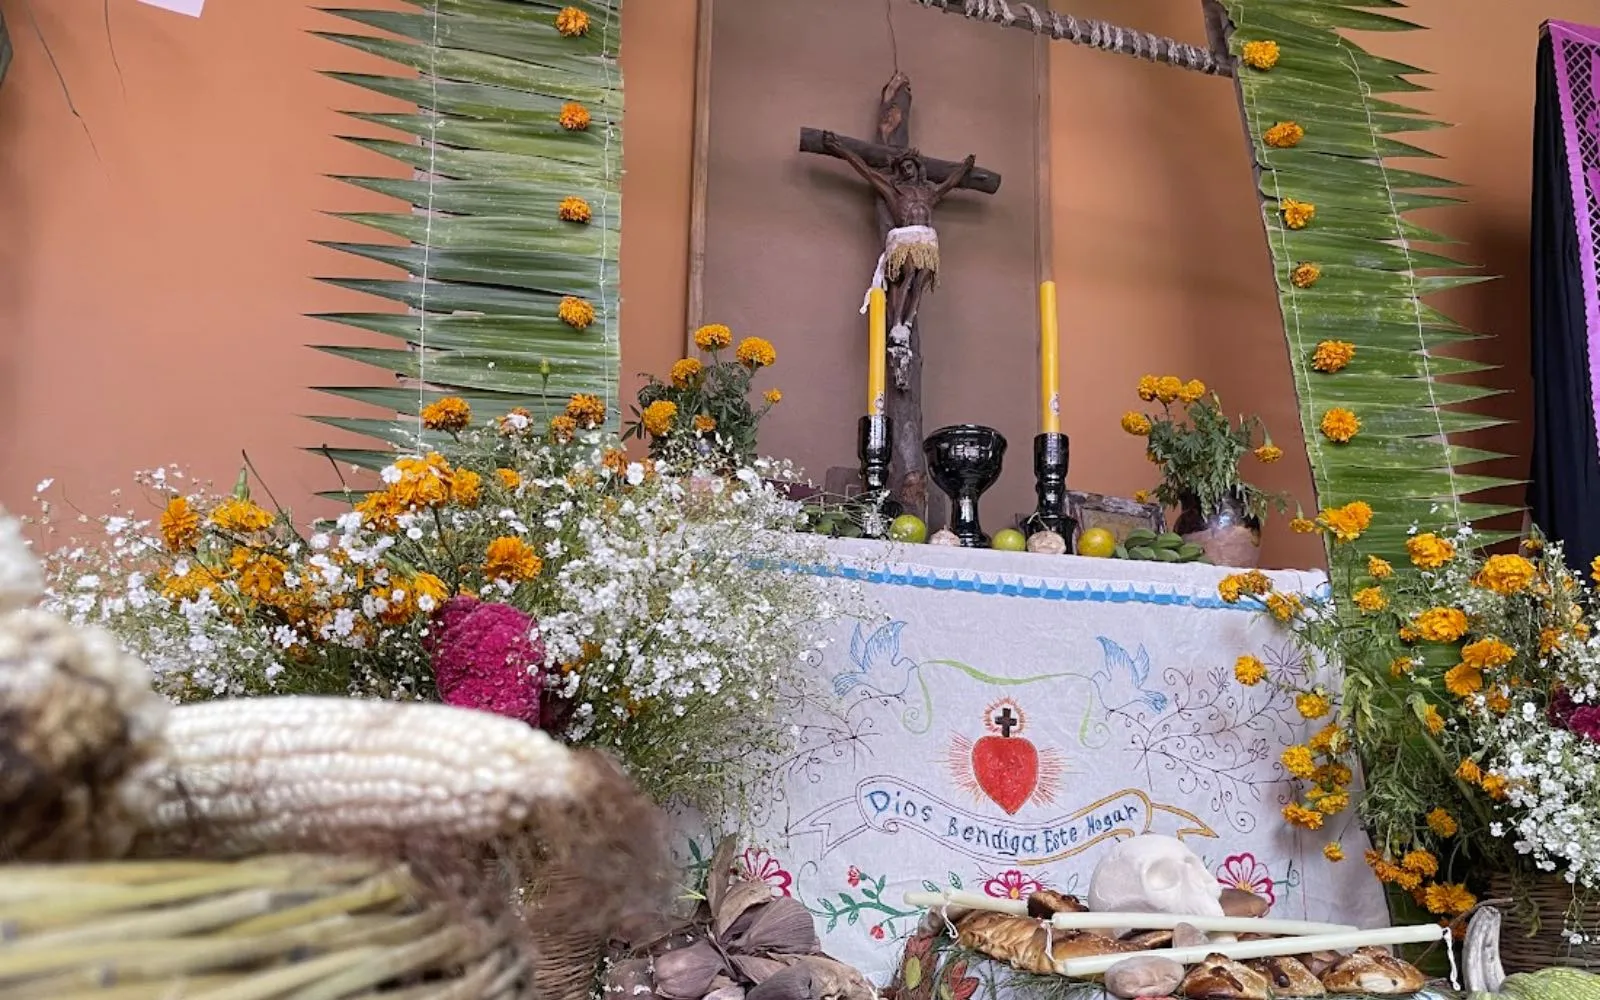 Tradicional ofrenda o altar de muertos en México.?w=200&h=150